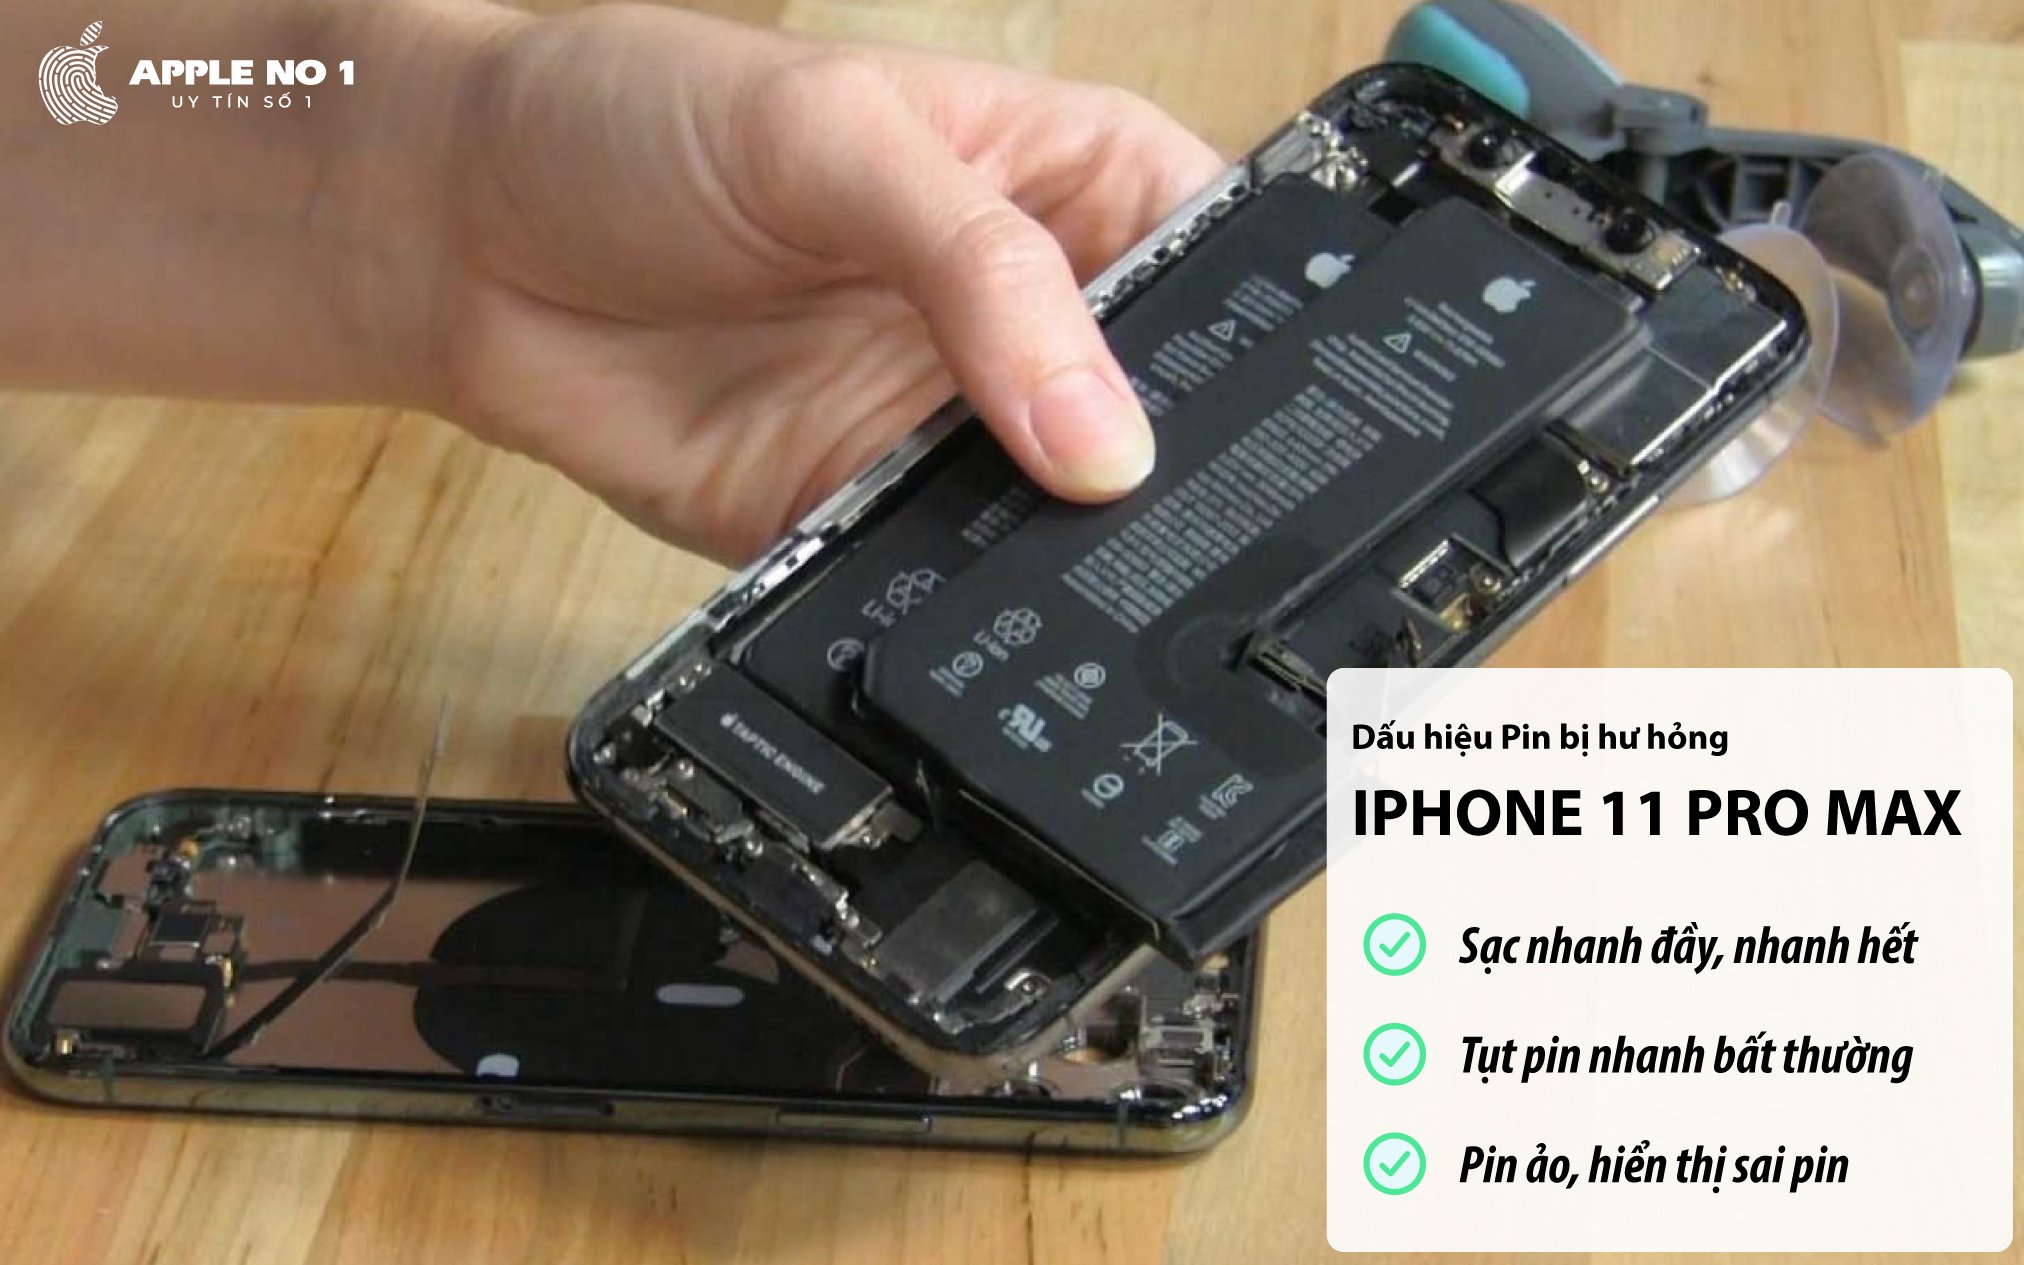 Một số biểu hiện sau cho thấy viên pin iPhone 11 Pro max gặp vấn đề